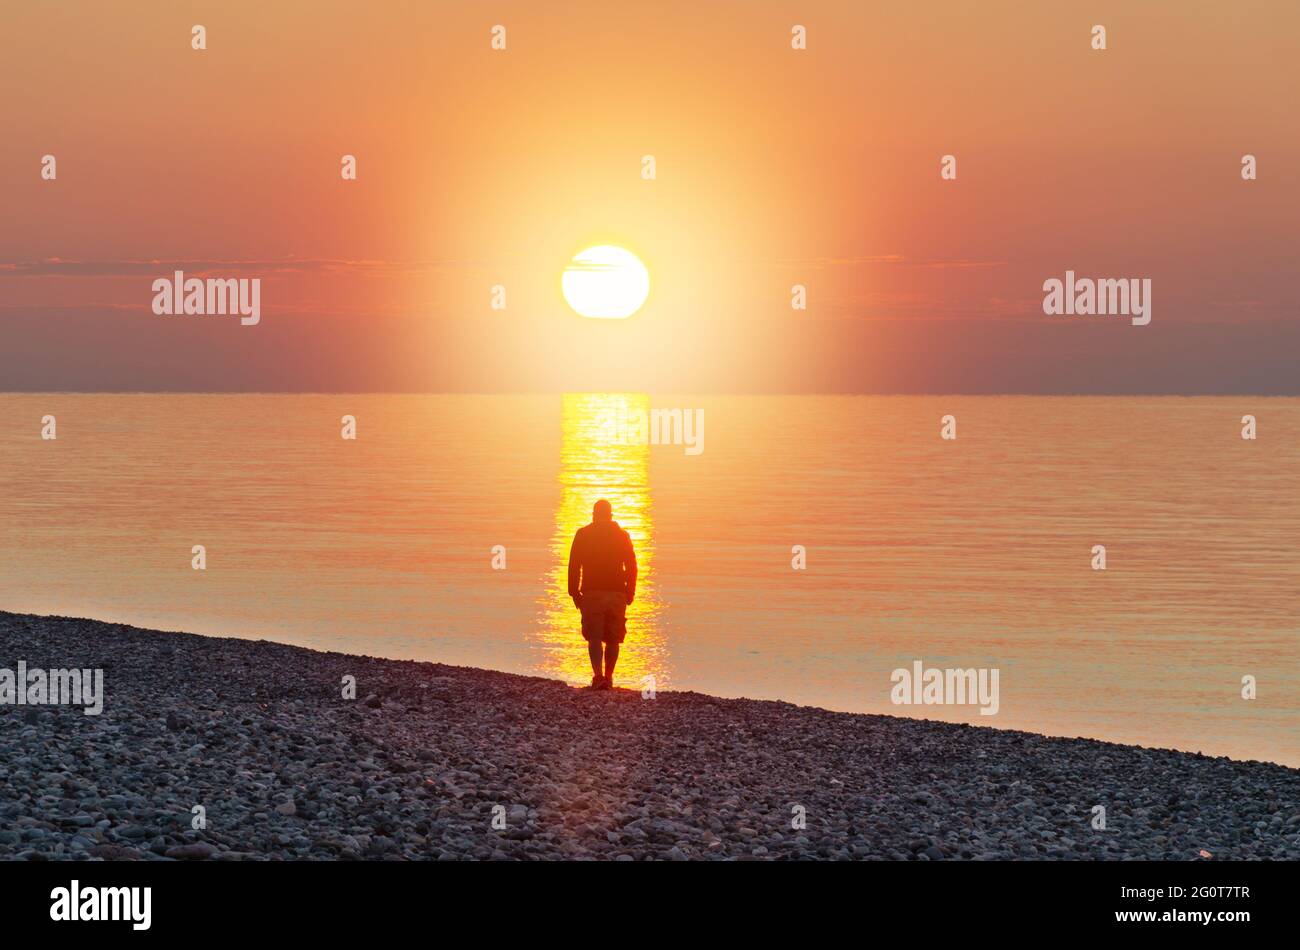 Der Mensch steht vor dem Meer bei Sonnenlicht. Menschliche Silhouette im Strom des Sonnenlichts. Konzept der Suche nach Ihrem Weg und den Sinn des Lebens. Stockfoto